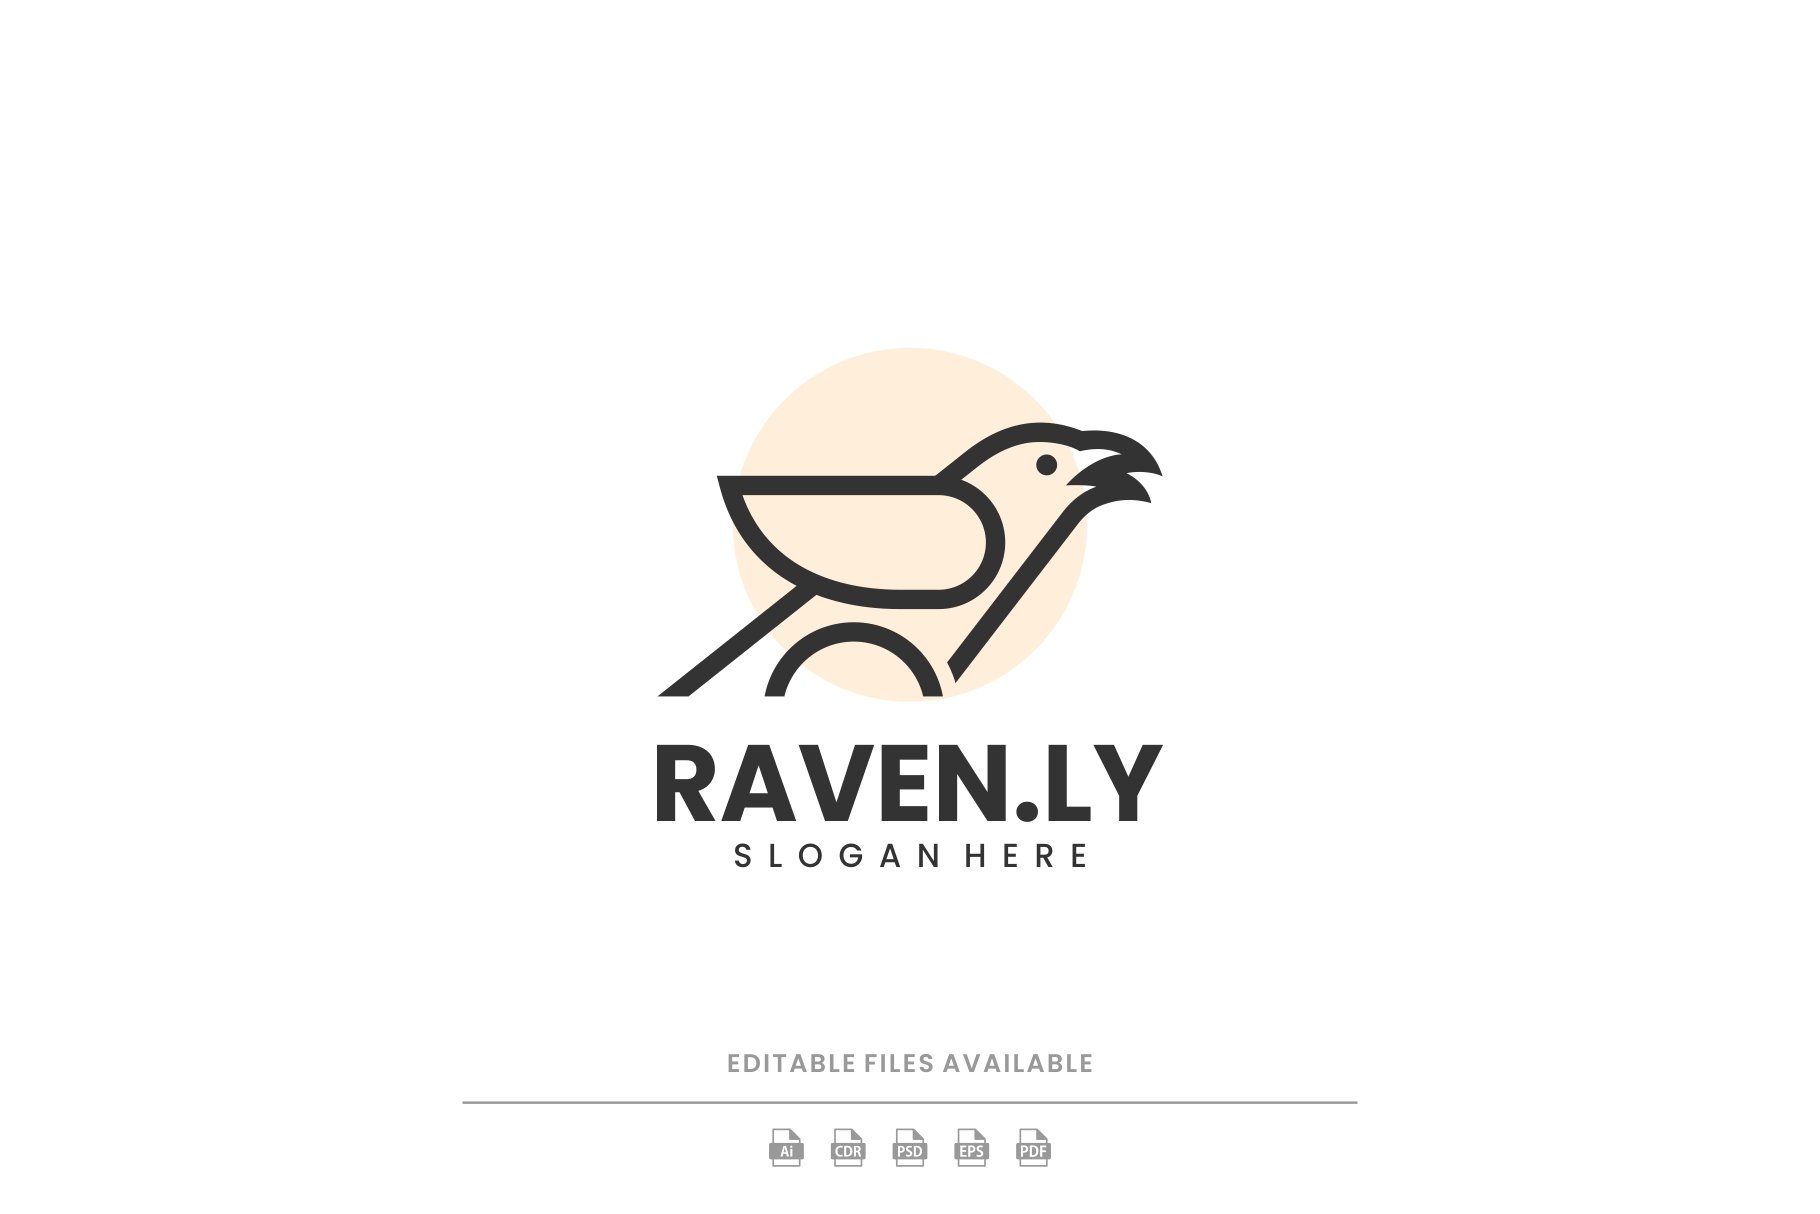 Raven Line Art Logo cover image.